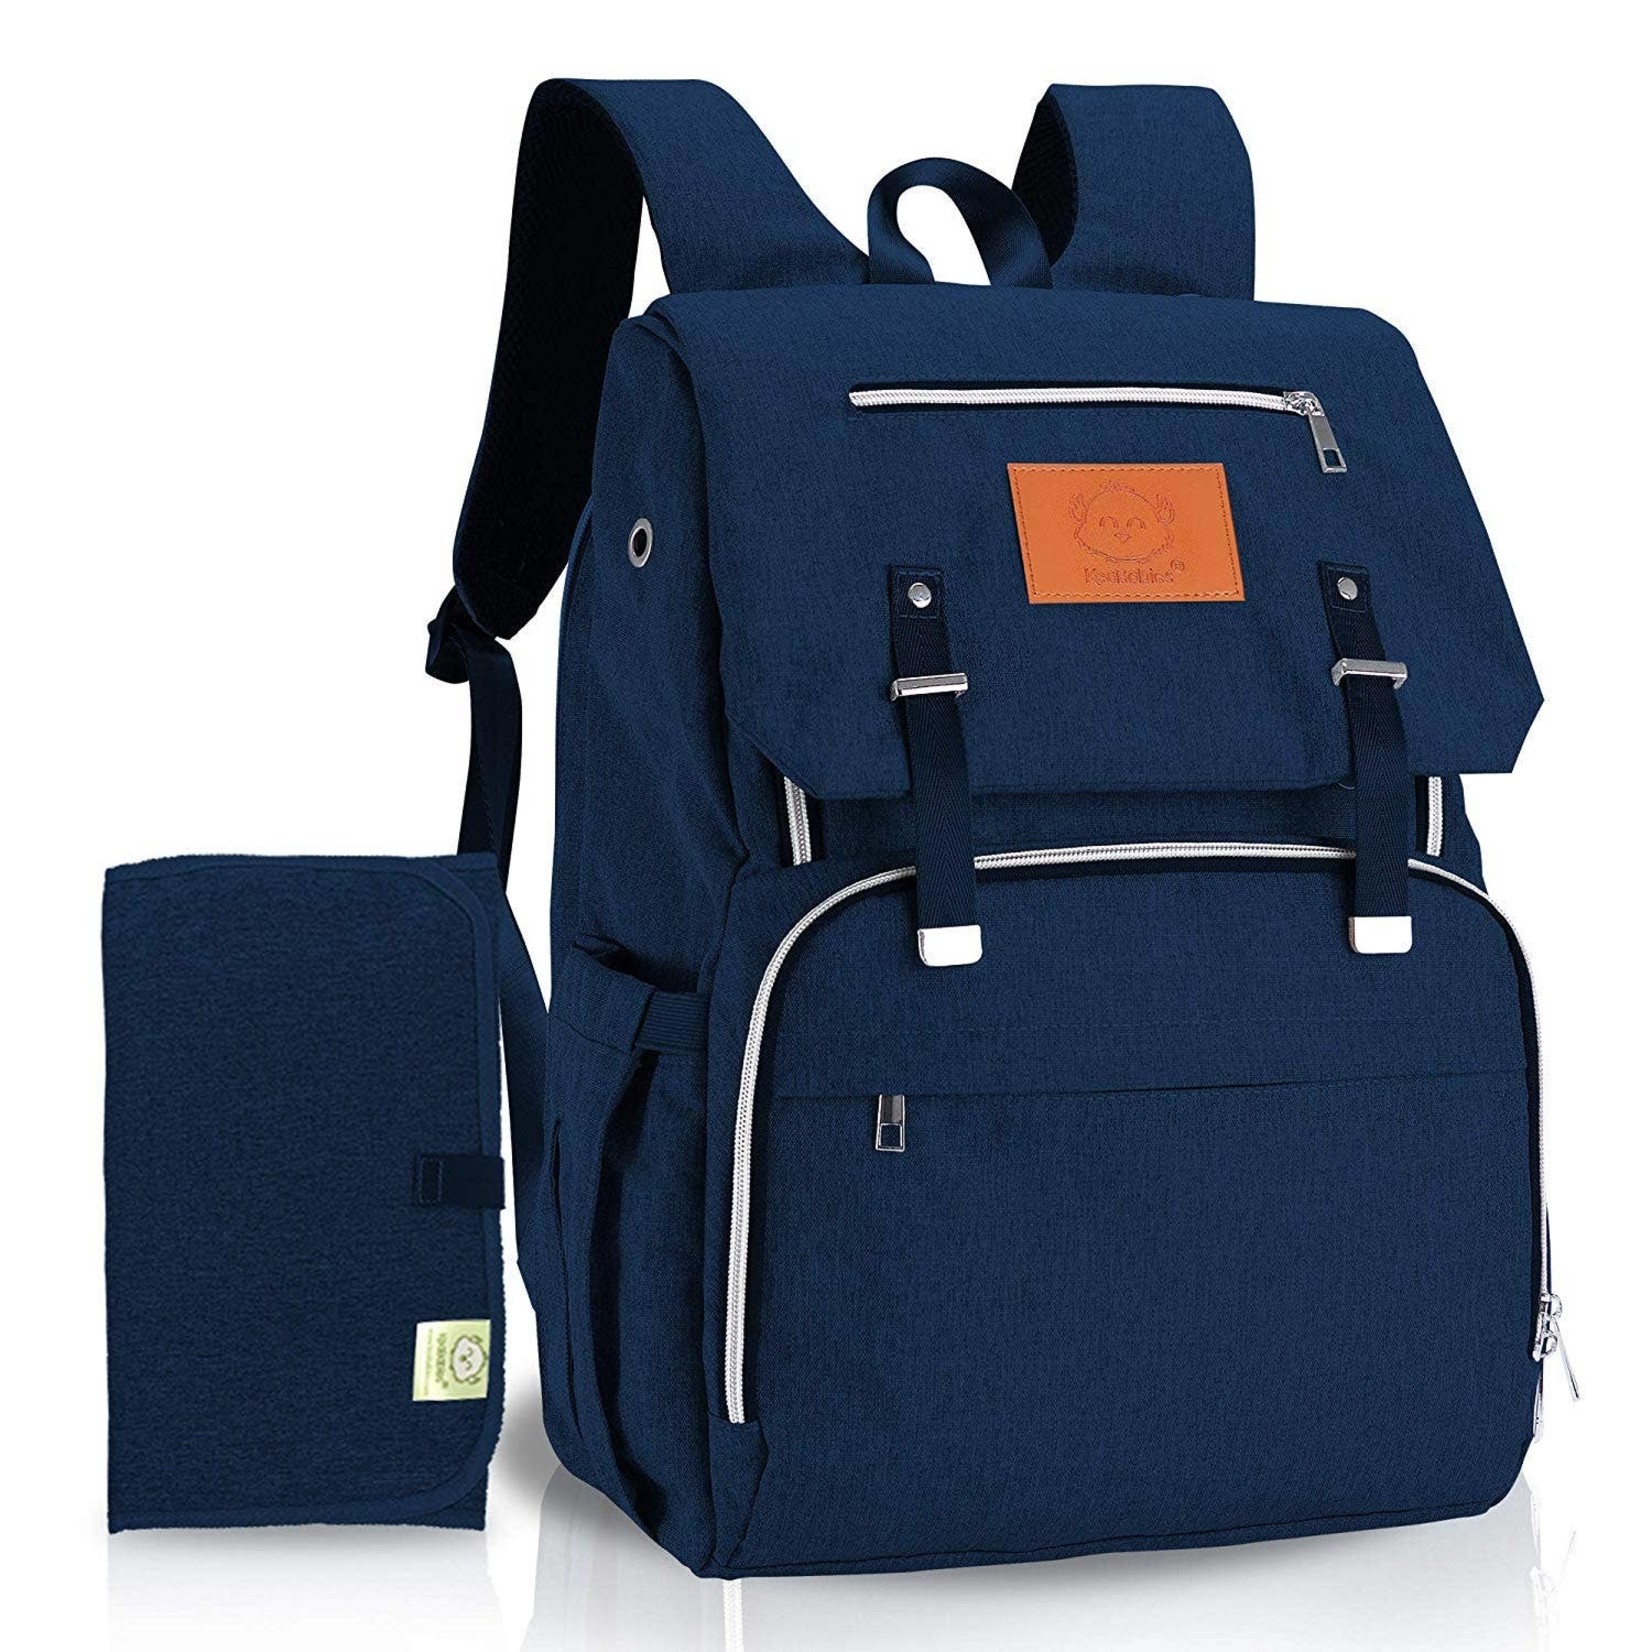 KeaBabies Original Diaper Backpack